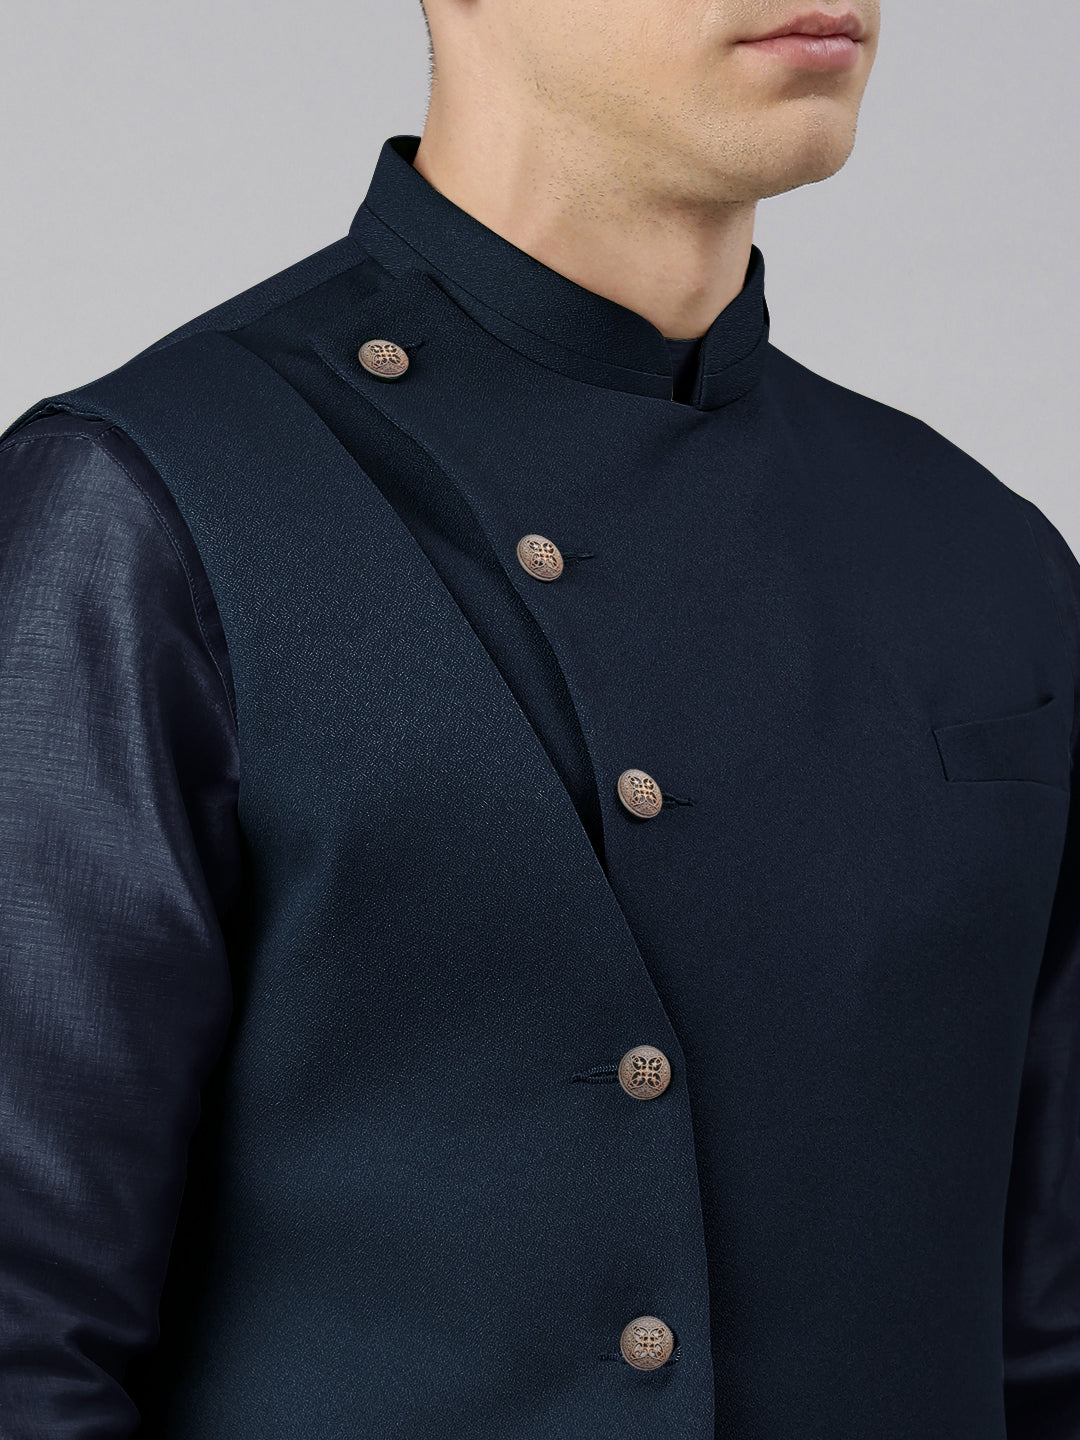 Blue Waistcoat Jacket With Mint Crushed Kurta